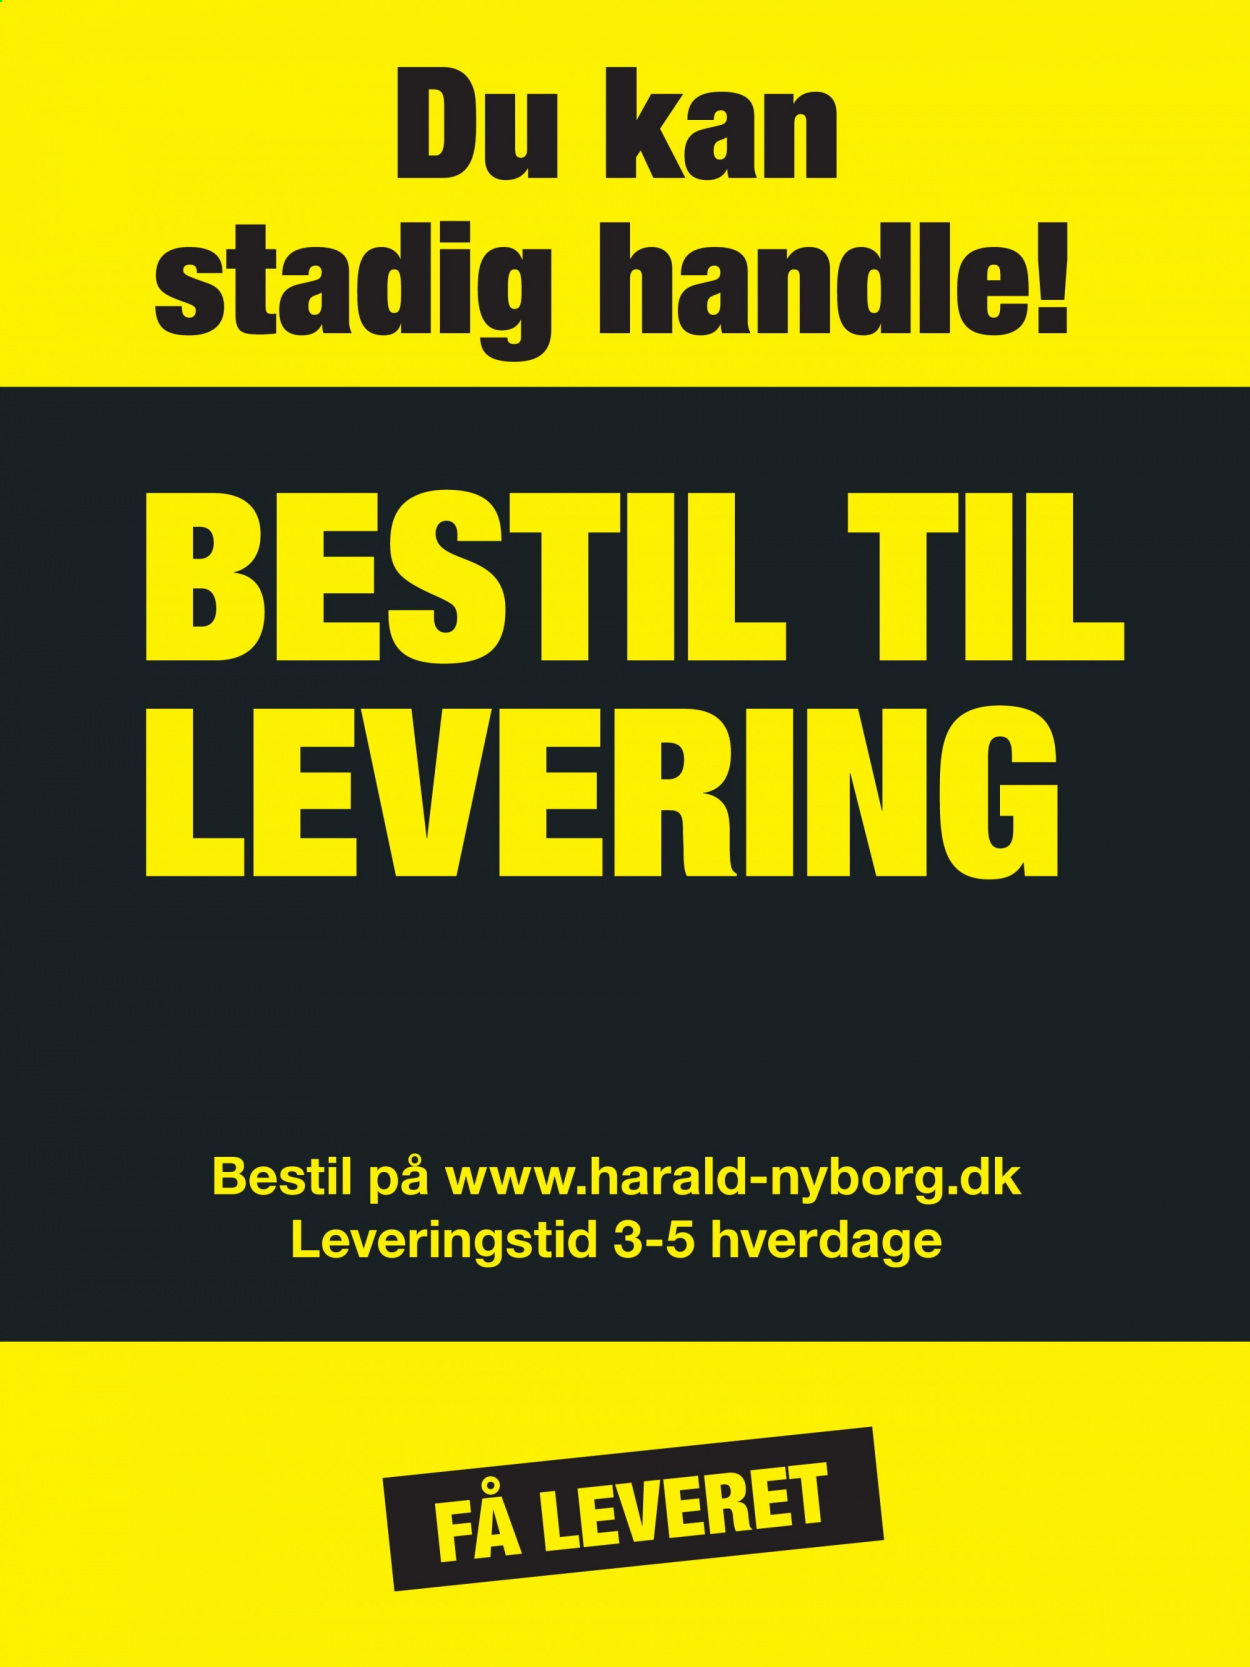 Harald Nyborg tilbudsavis  - 21.01.2021 - 27.01.2021. Side 3.